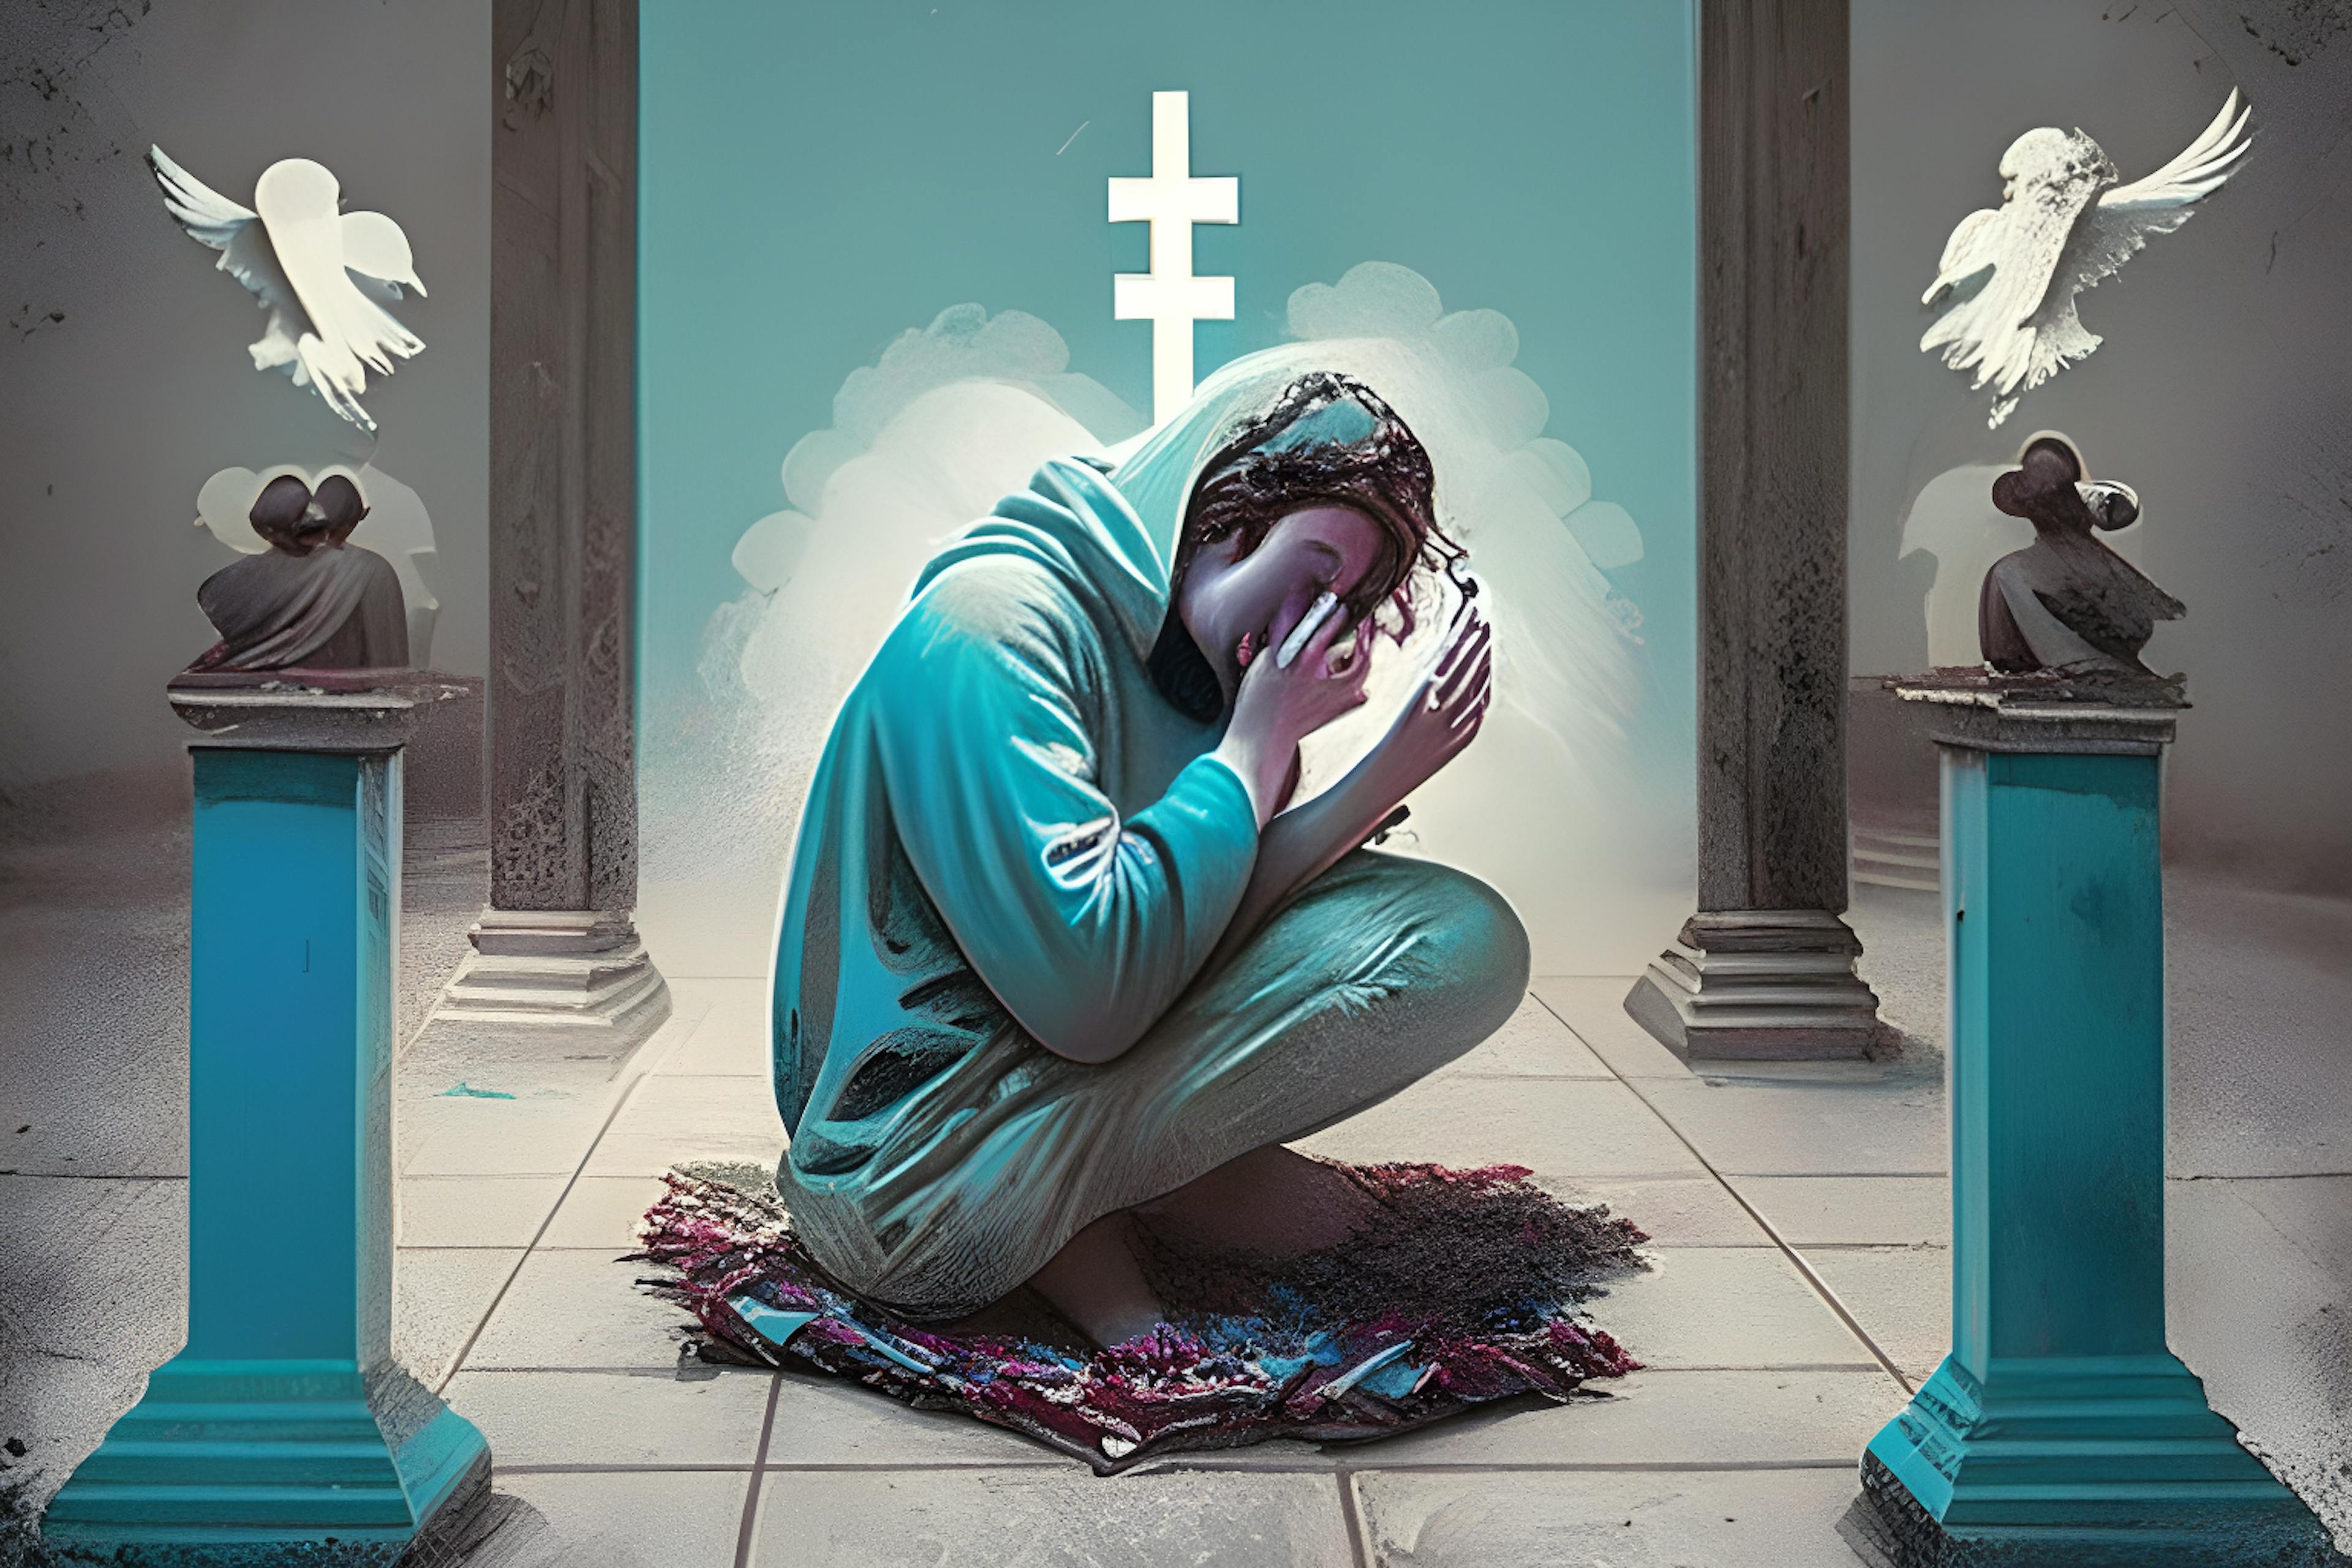 HackerNoon AI Image Generation, Prompt "Sosyal medya bağımlısı, tanrılara dua eden bir kişi"